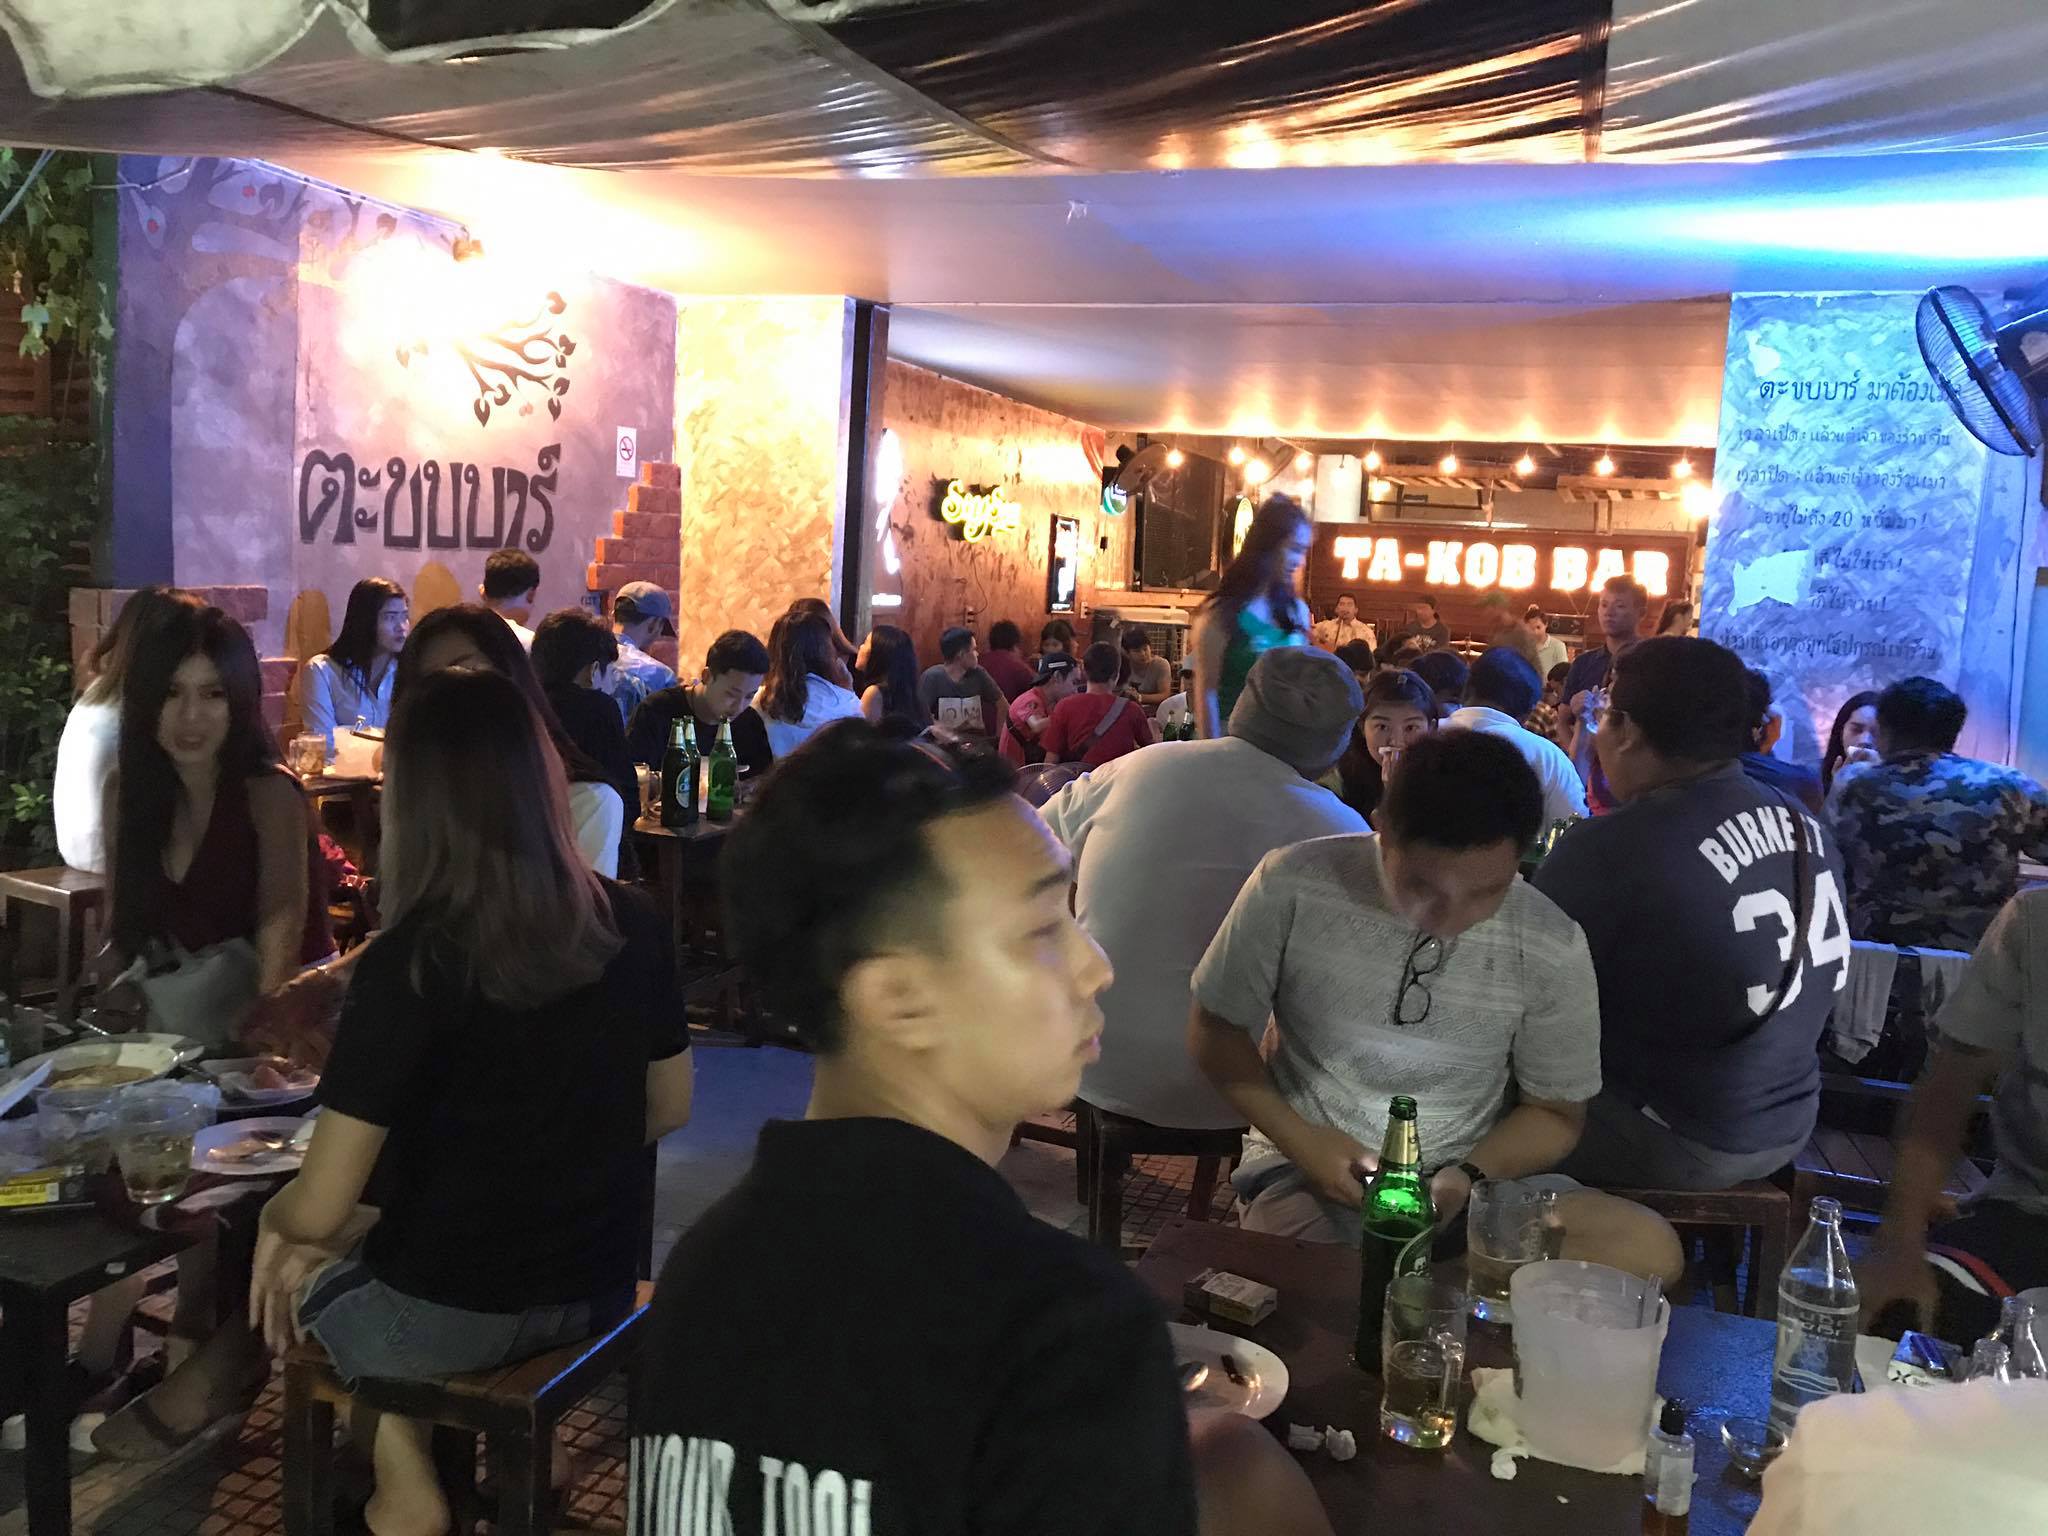 ตะขบบาร์ มาต้องเมา (Ta Kob Bar) : นครสวรรค์ (Nakhon Sawan)